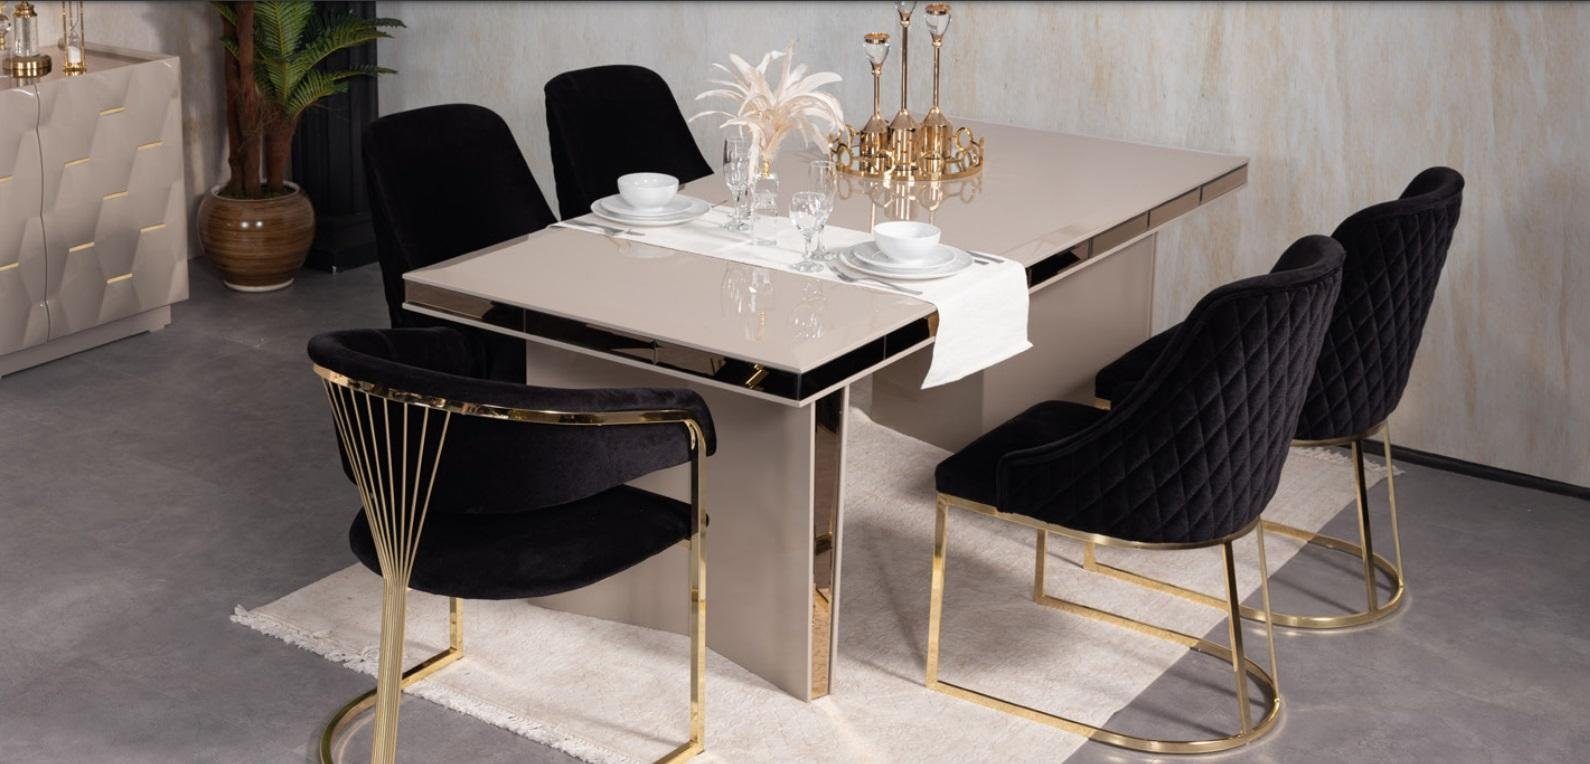 JVmoebel Esstisch Tische Tisch Esstisch, Luxus Esstische Esszimmer Möbel Gold Holz Design